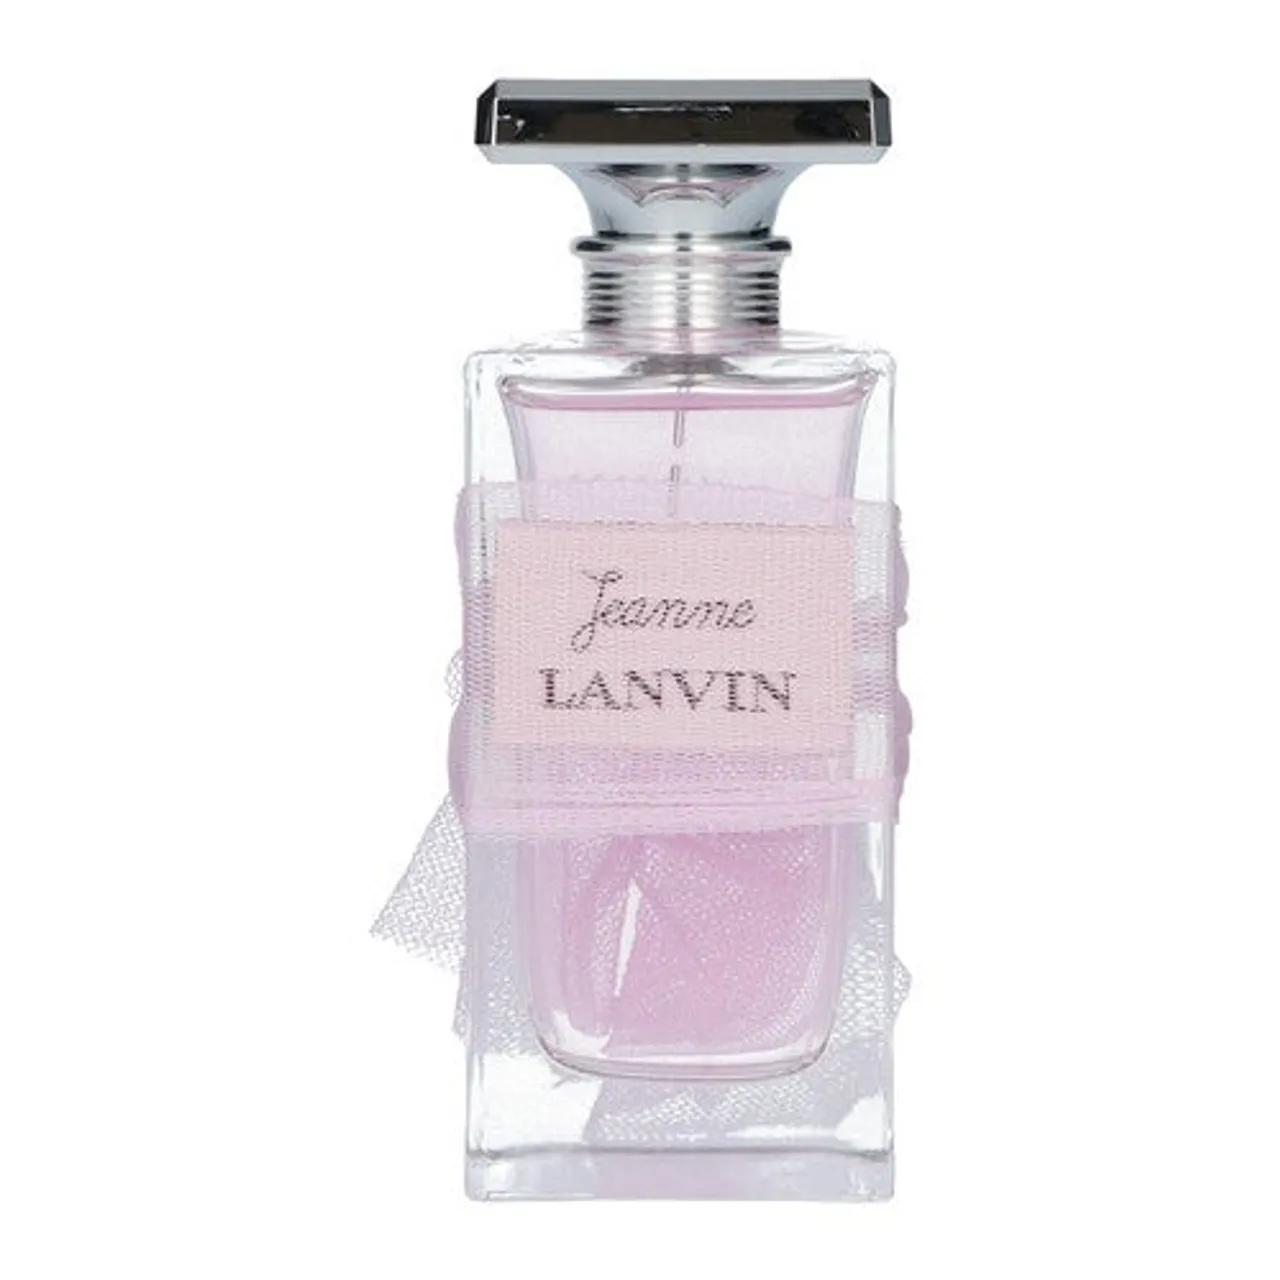 Lanvin Jeanne Lanvin Eau de Parfum 100 ml